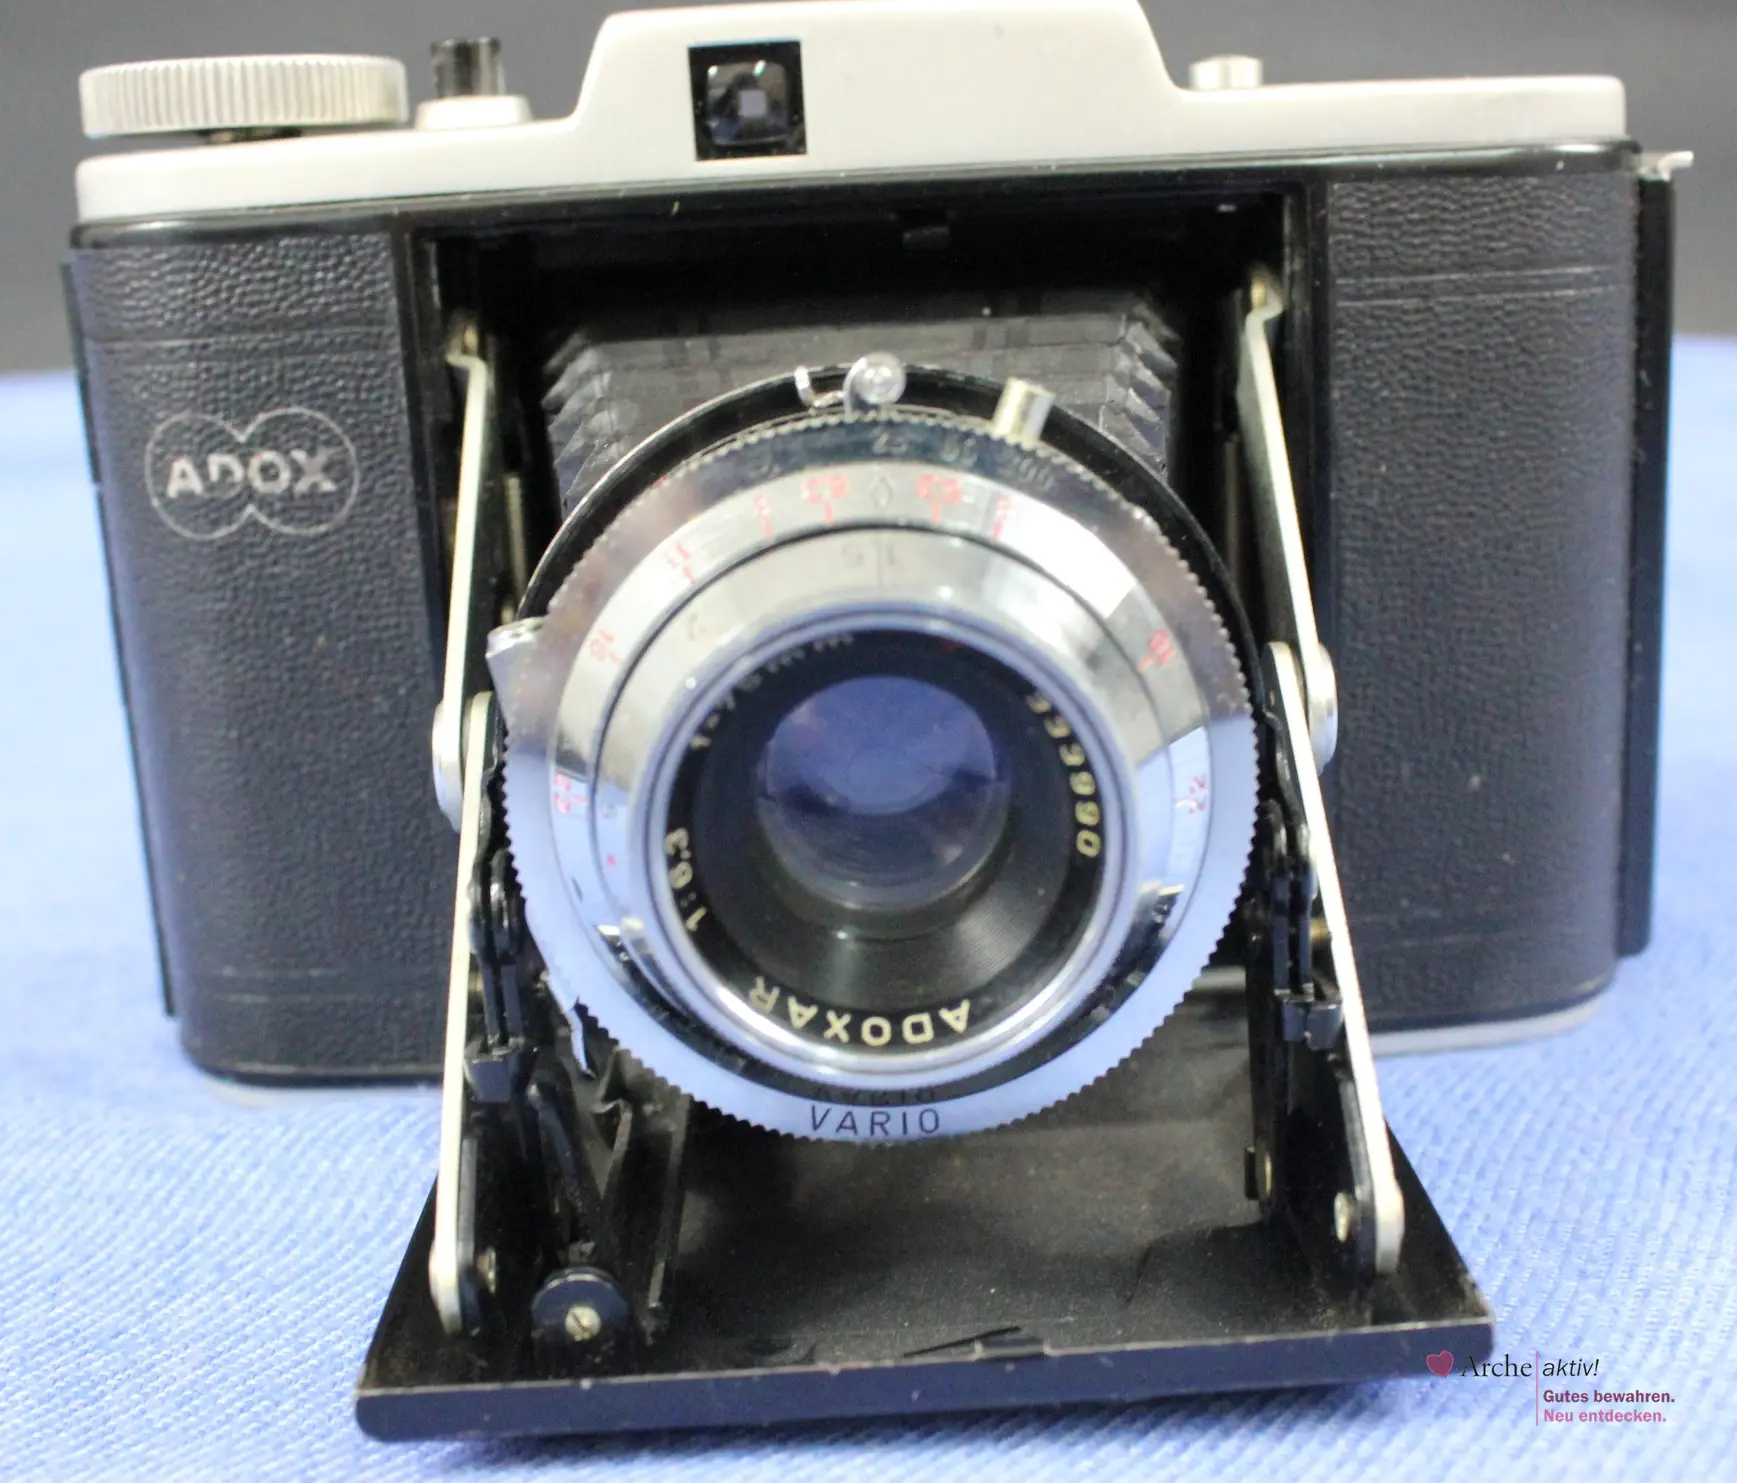 Adox Golf - Faltkamera mit Objektiv Adoxar 1:6,3 / 75 mm, gebraucht